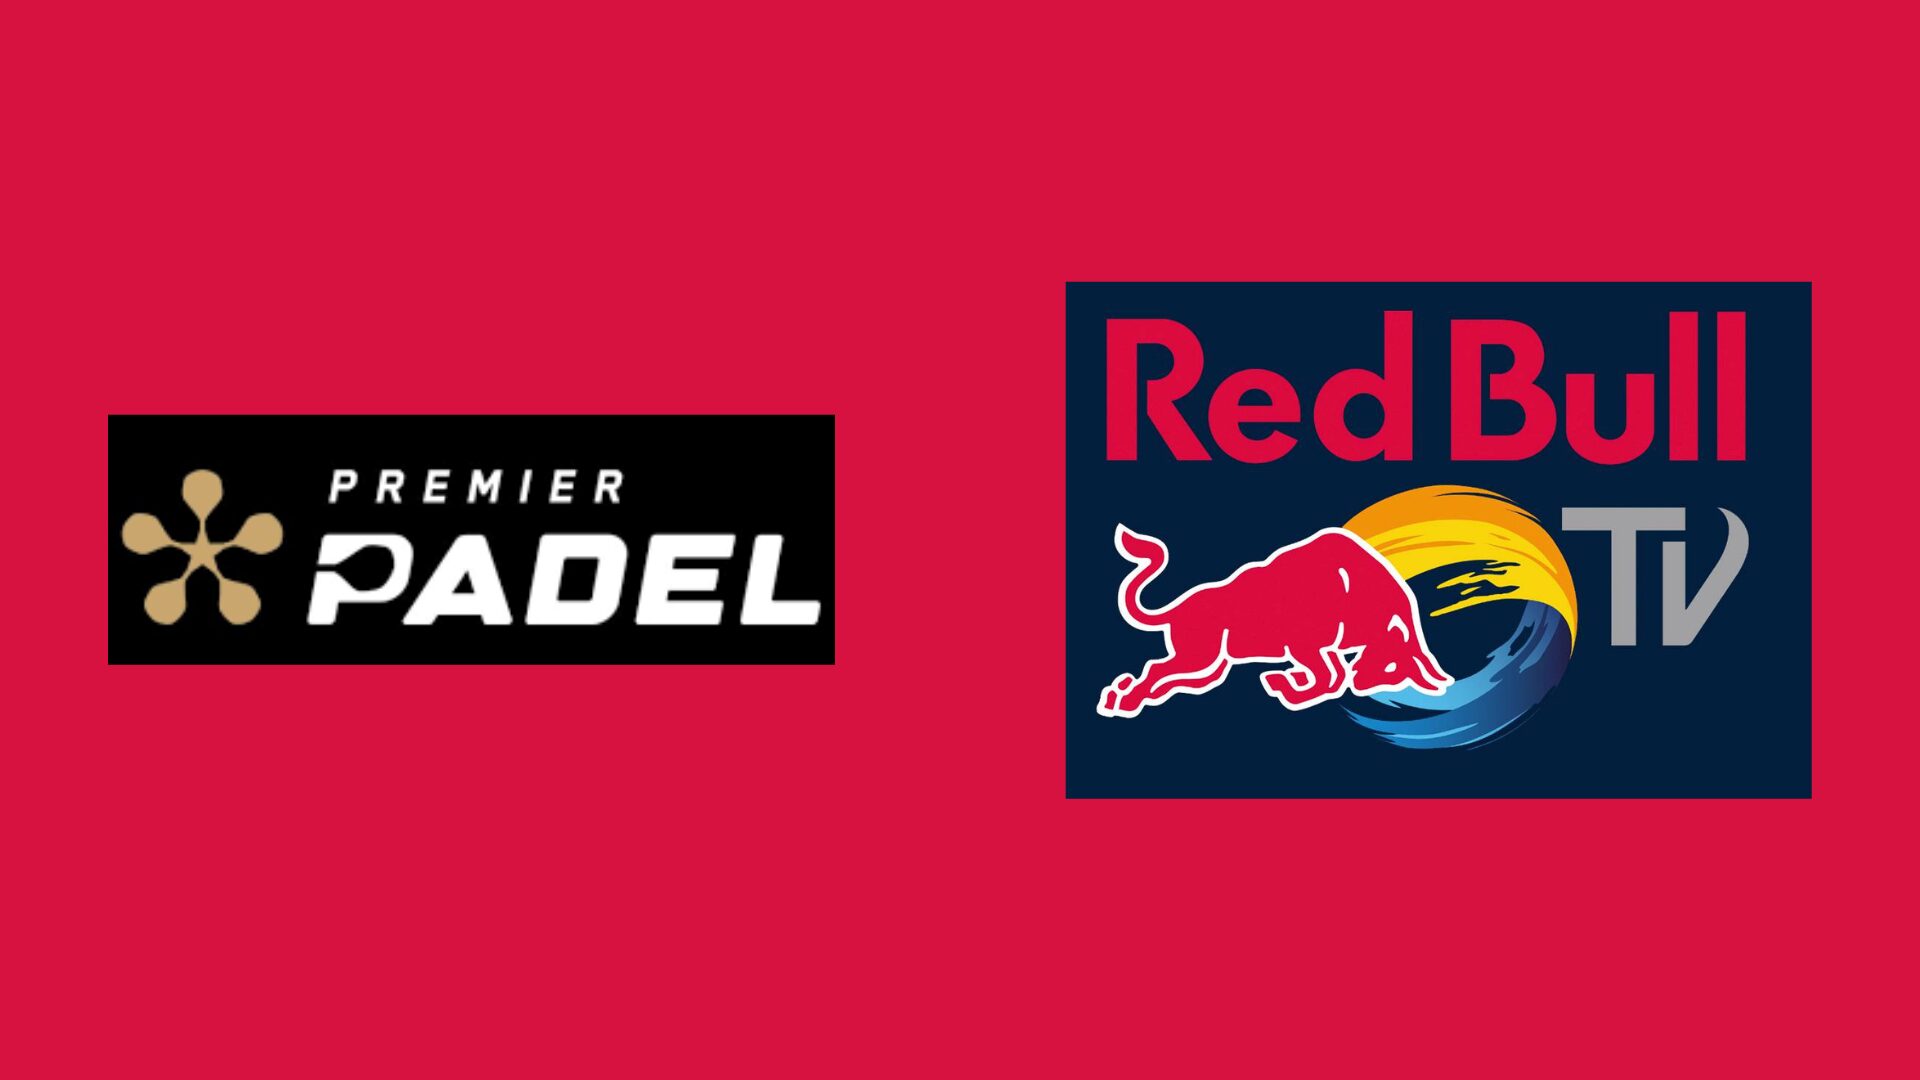 Et partnerskab mellem Premier Padel og Red Bull TV til at udsende kampene!